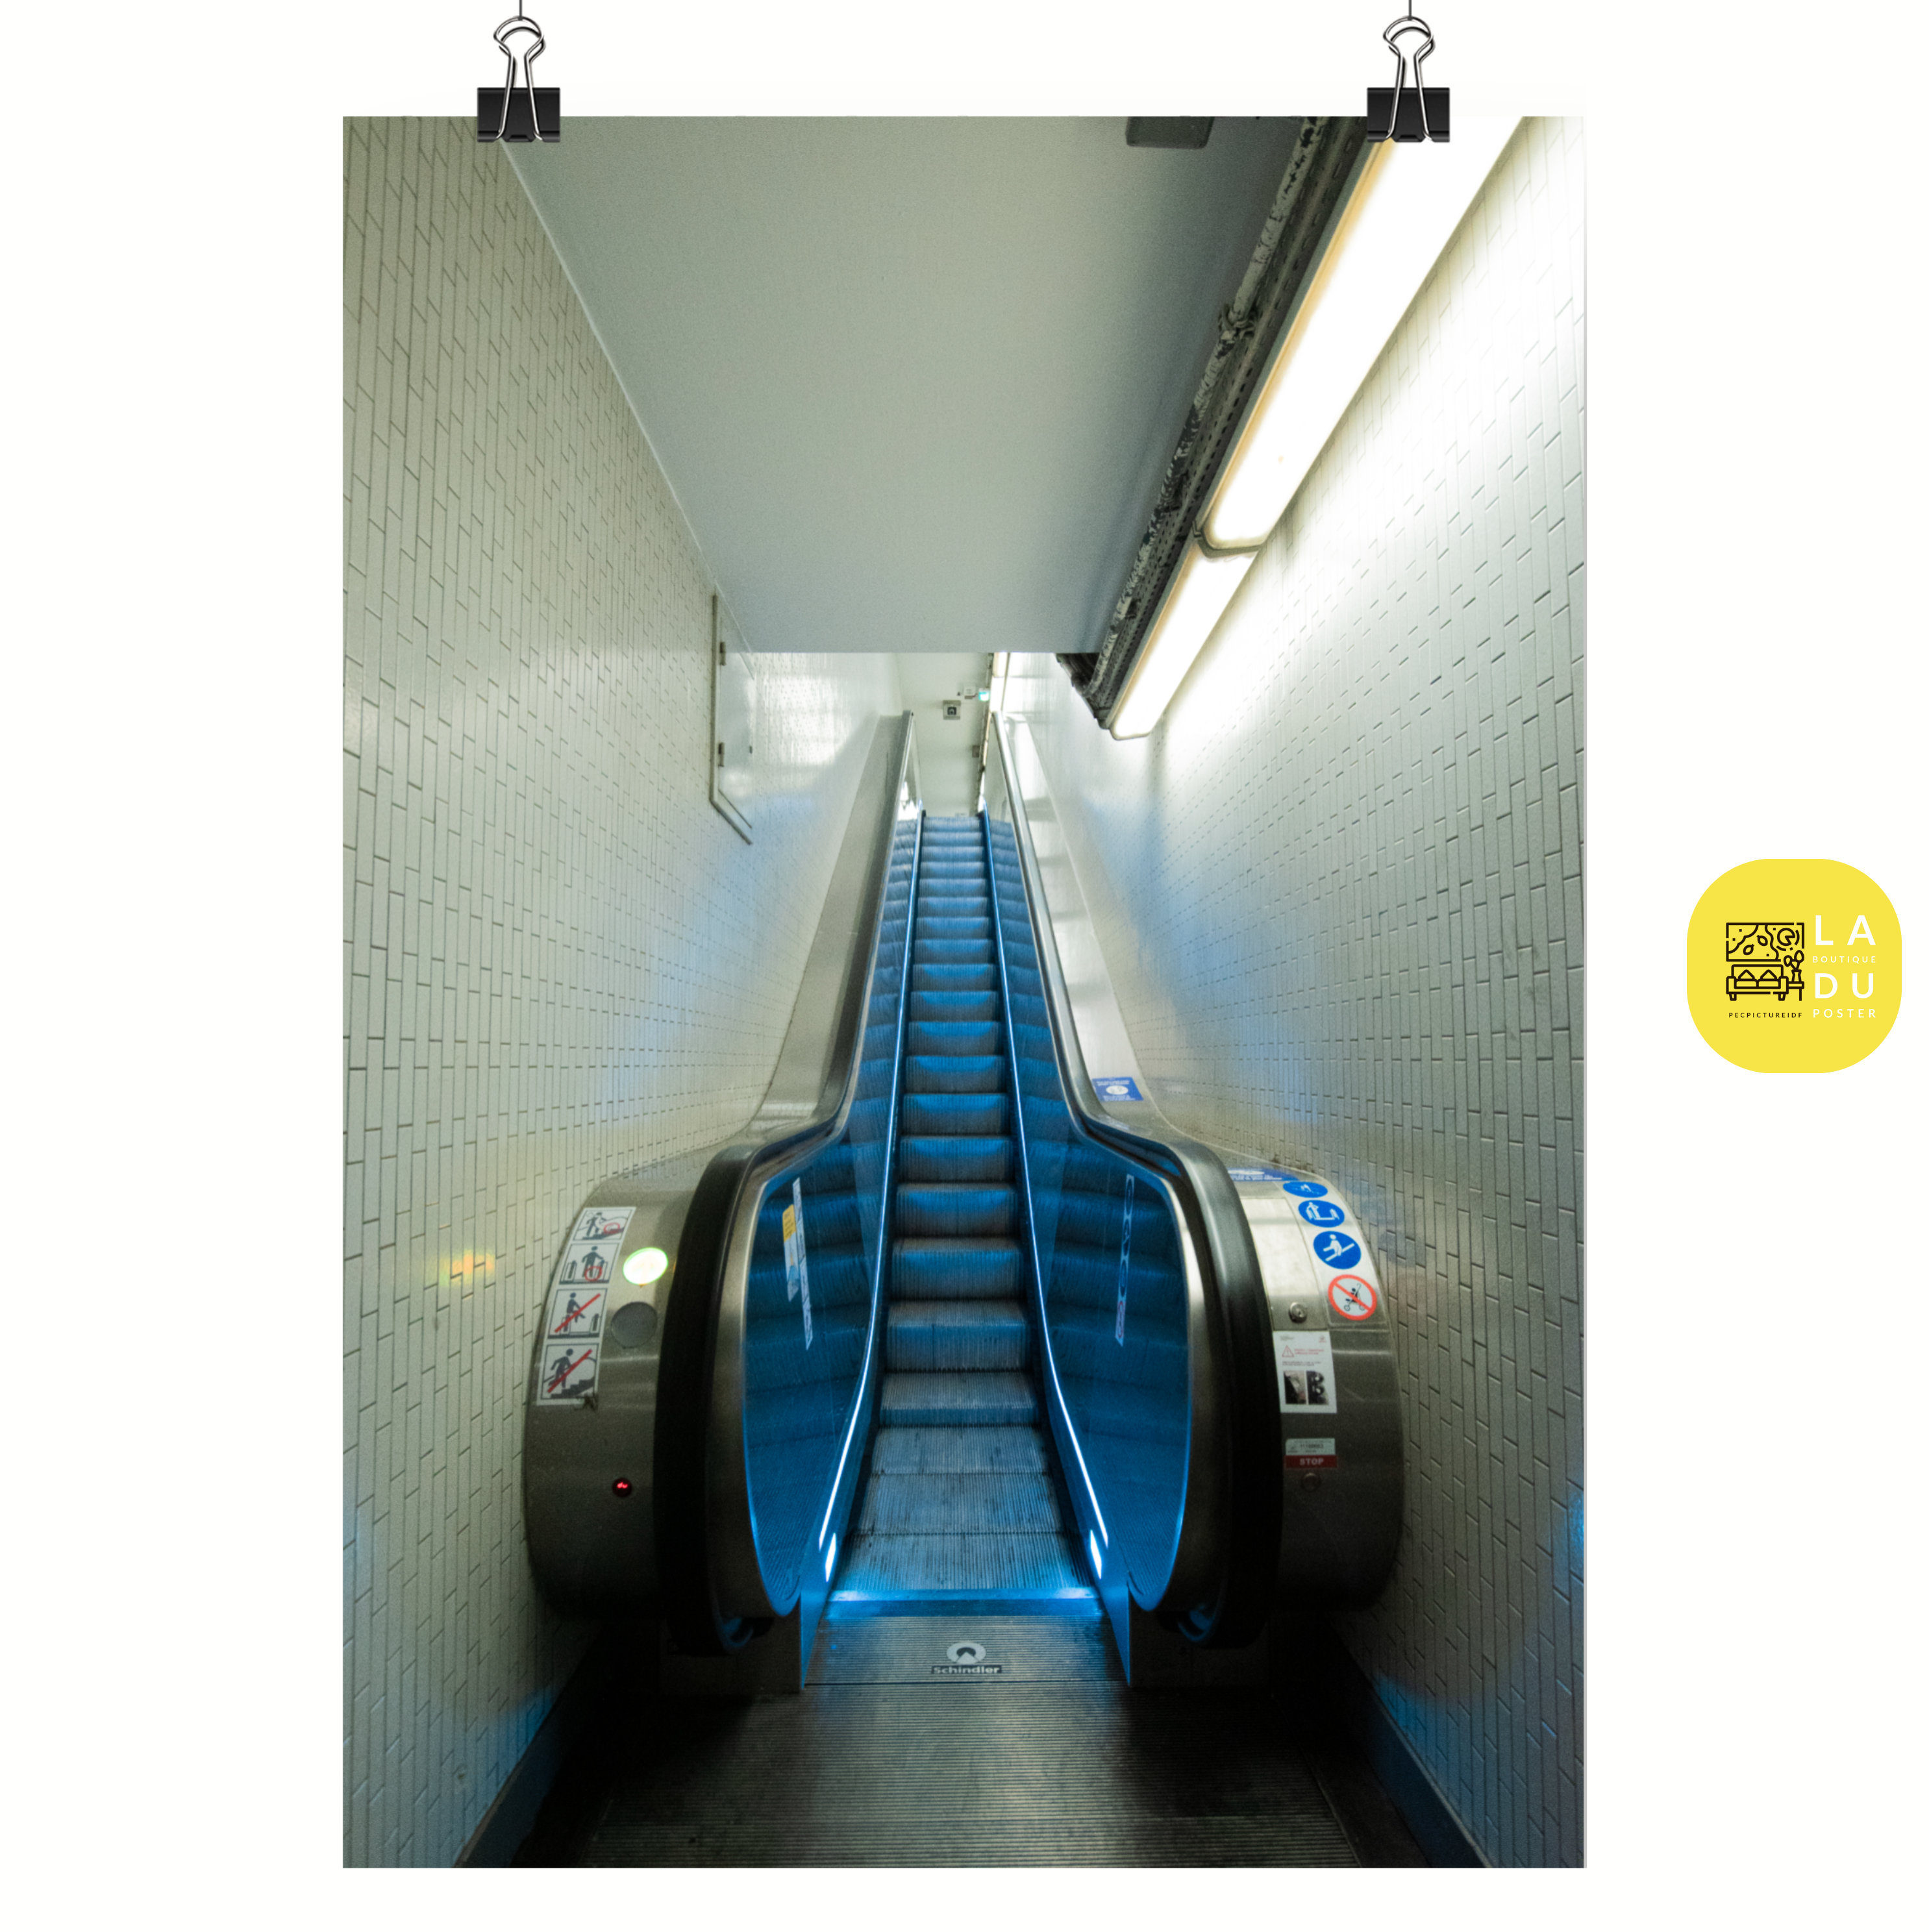 Poster mural - L'escalator moderne – Photographie du métro – Poster photo, poster XXL, Photo d’art, photographie murale et des posters muraux des photographies de rue unique au monde. La boutique de posters créée par un Photographe français.